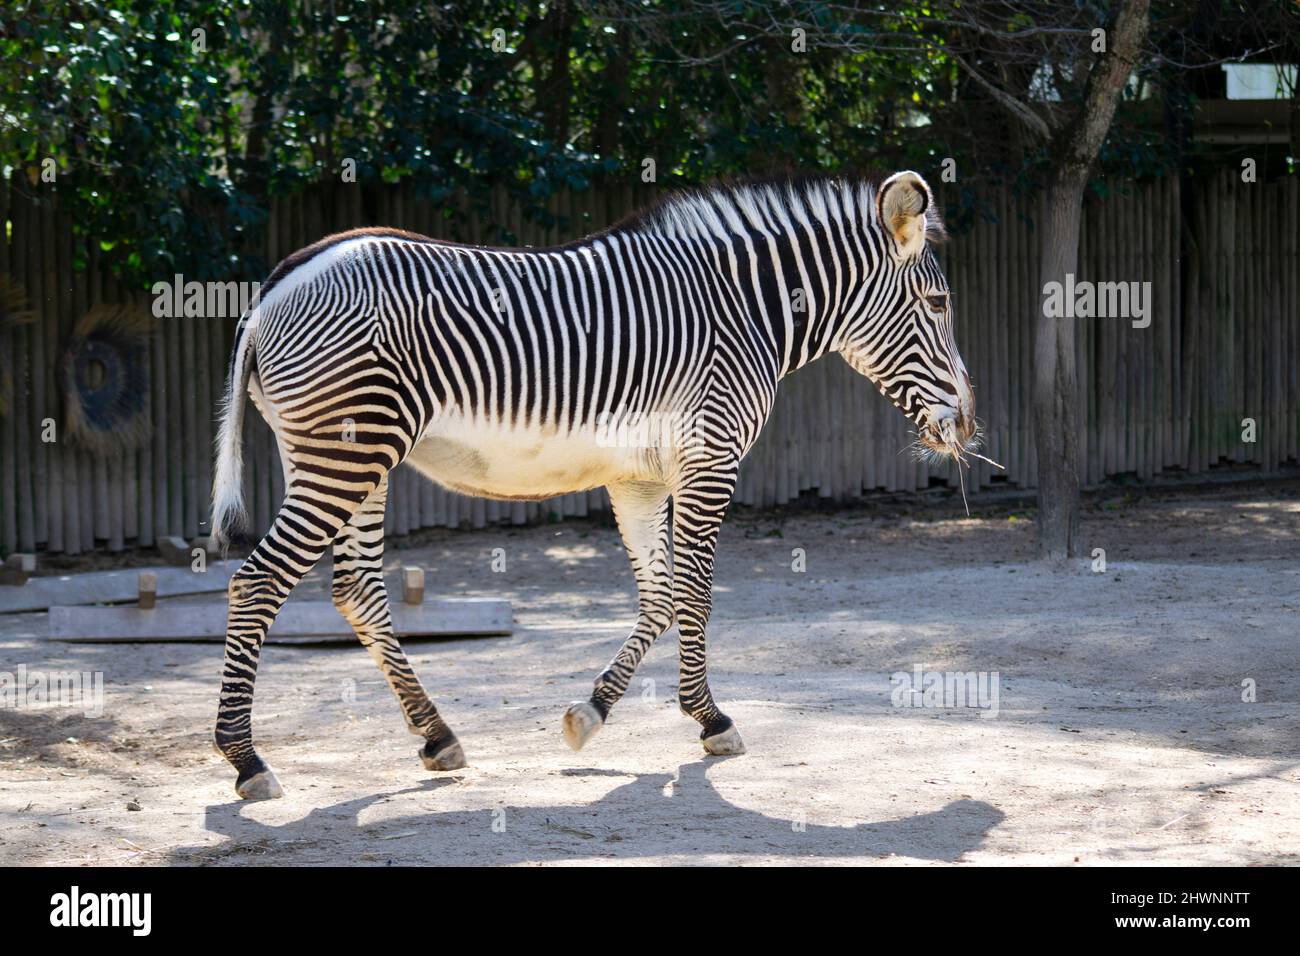 Zebras sind afrikanische Pferde mit markanten schwarz-weiß gestreiften Mänteln. Es gibt drei lebende Arten: Das Zebra von Grévy, das Zebra von Unis und die Zebras von MoZebras sind afrikanische Pferde mit markanten schwarz-weißen Streifen. Stockfoto